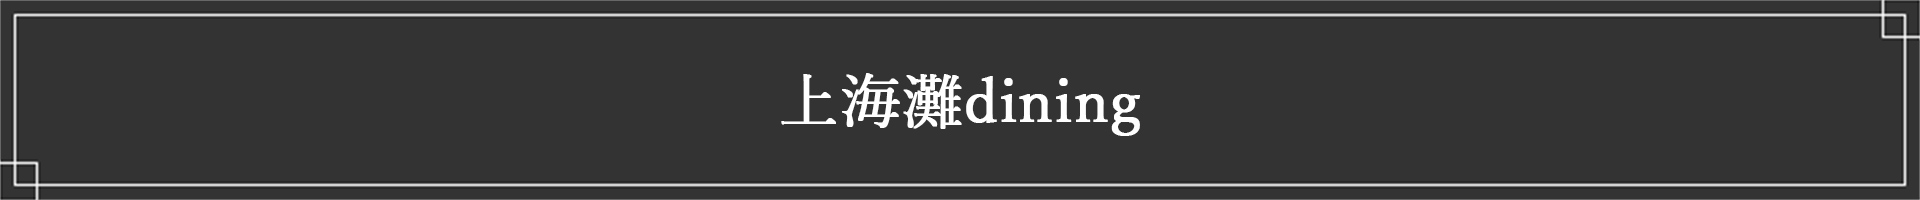 中紅上海灘dining（飲食）